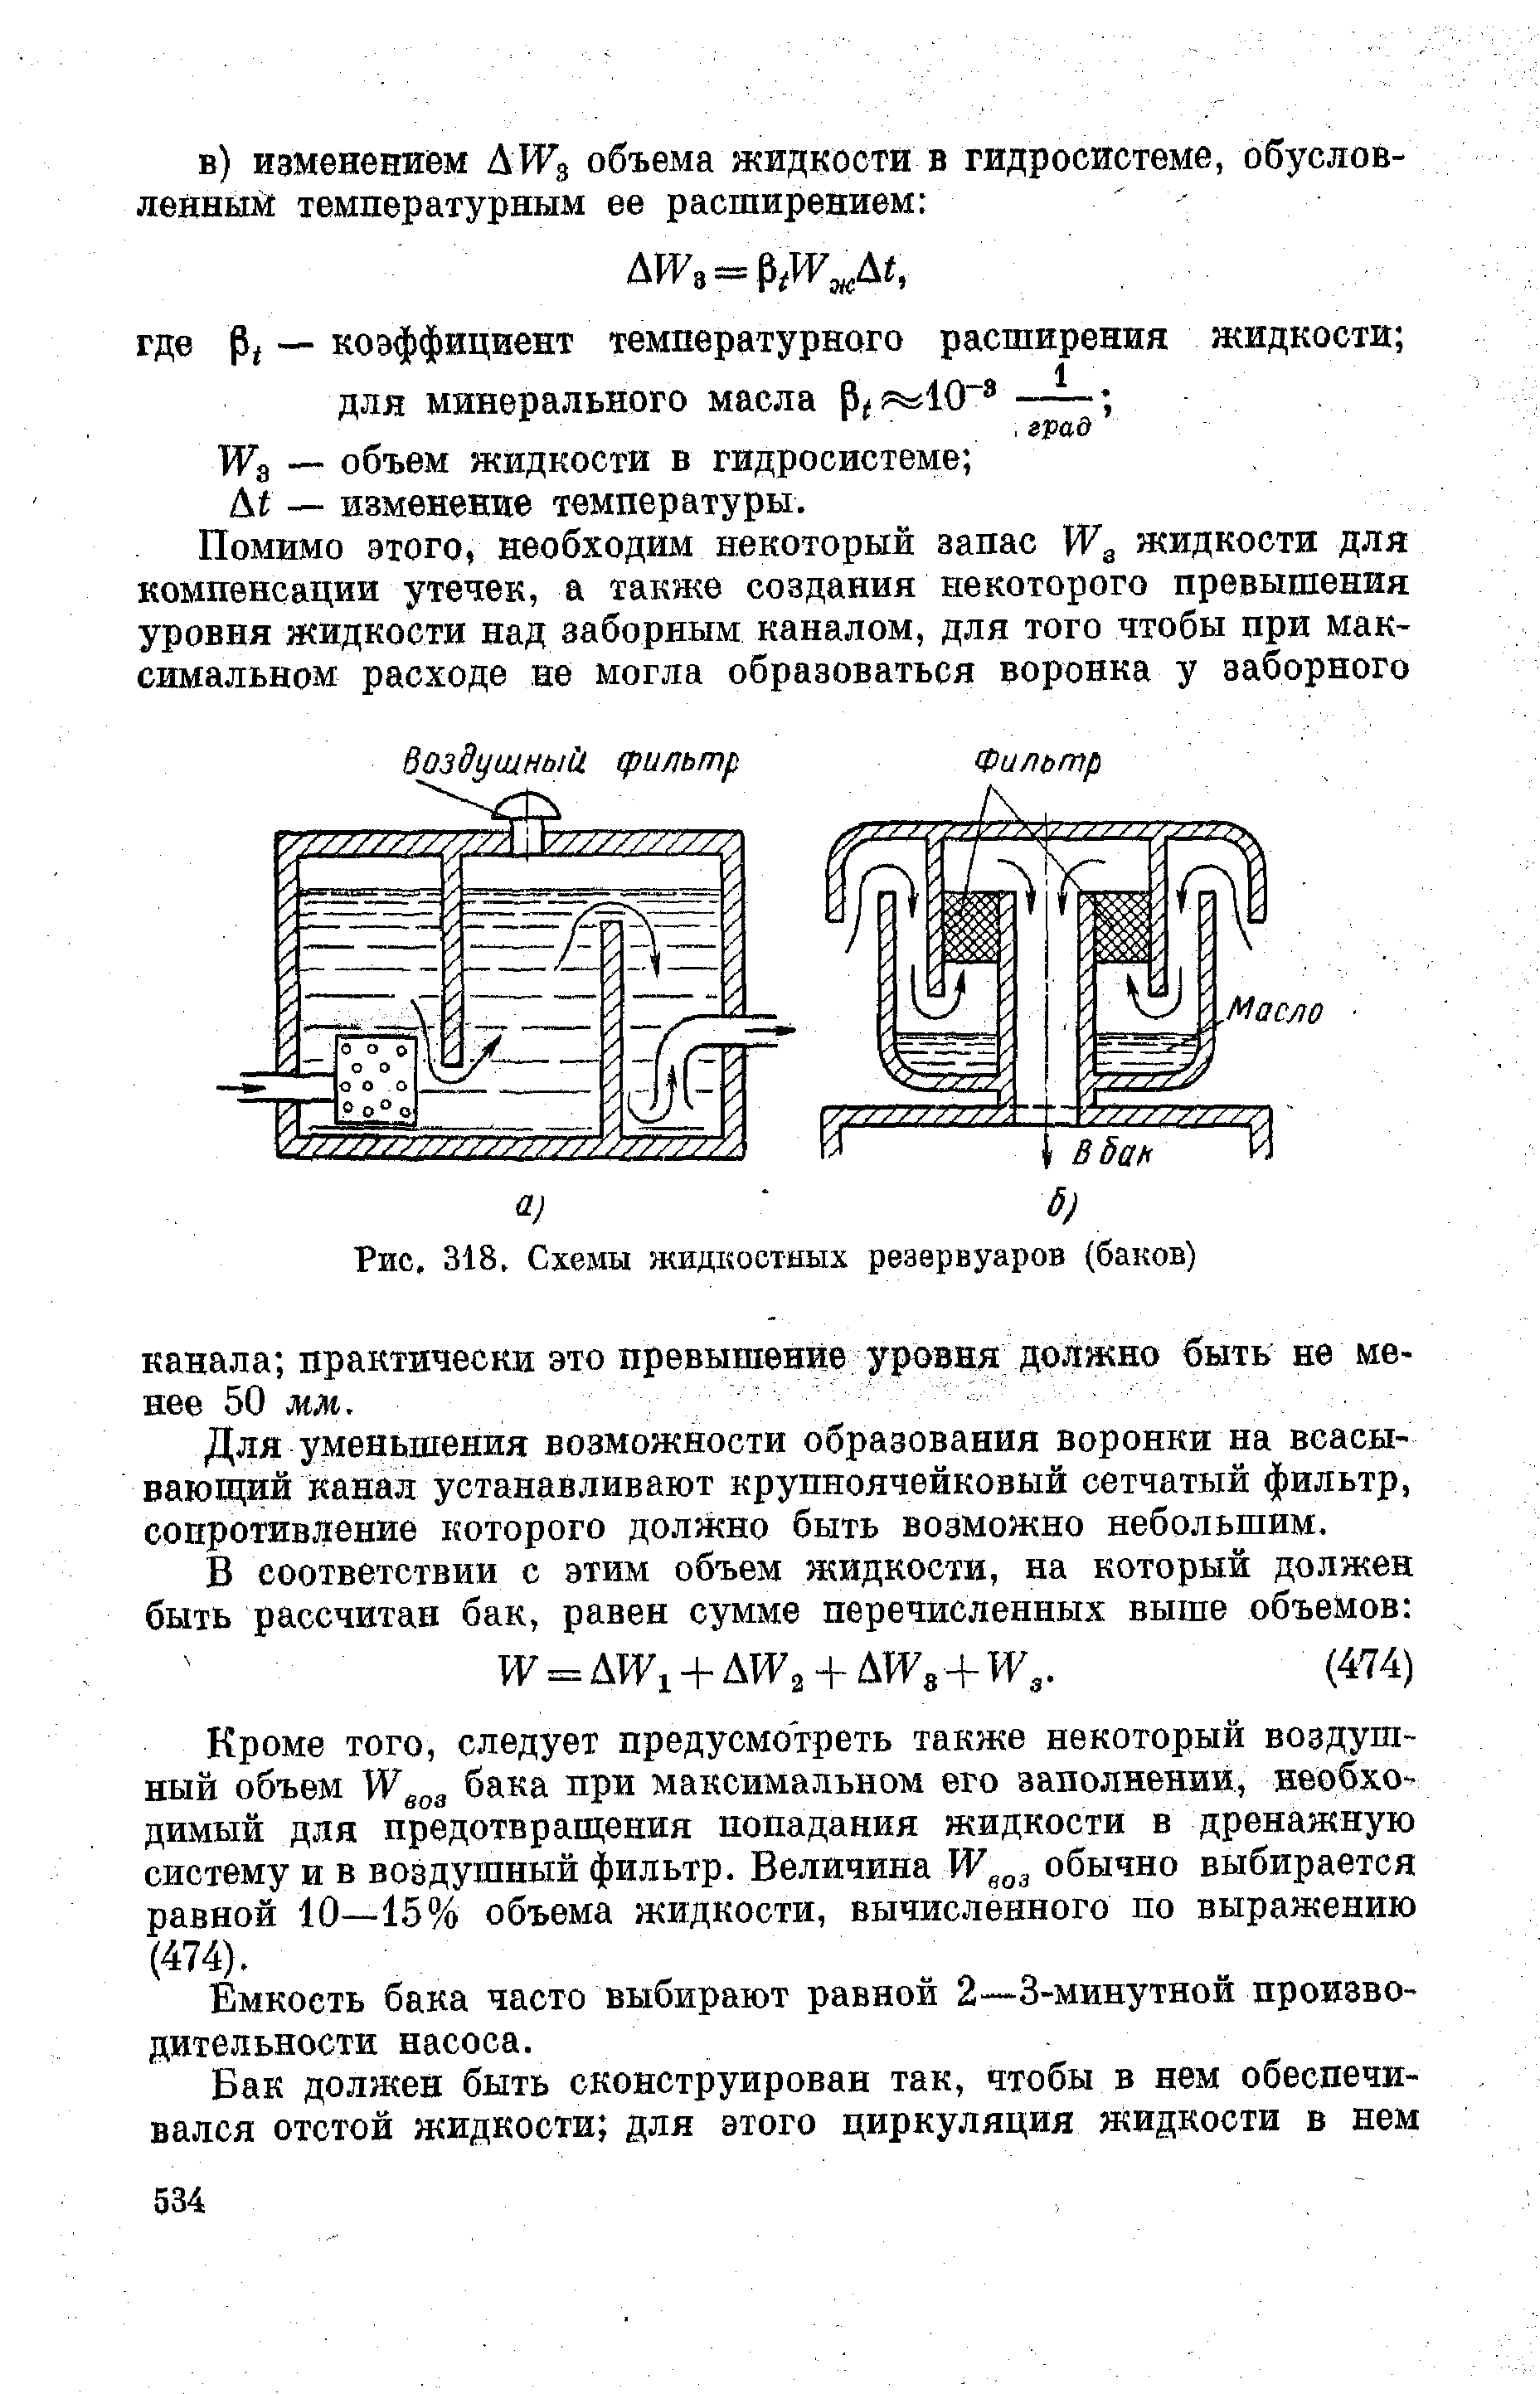 Рис. 318, Схемы жидкостных резервуаров (баков)
